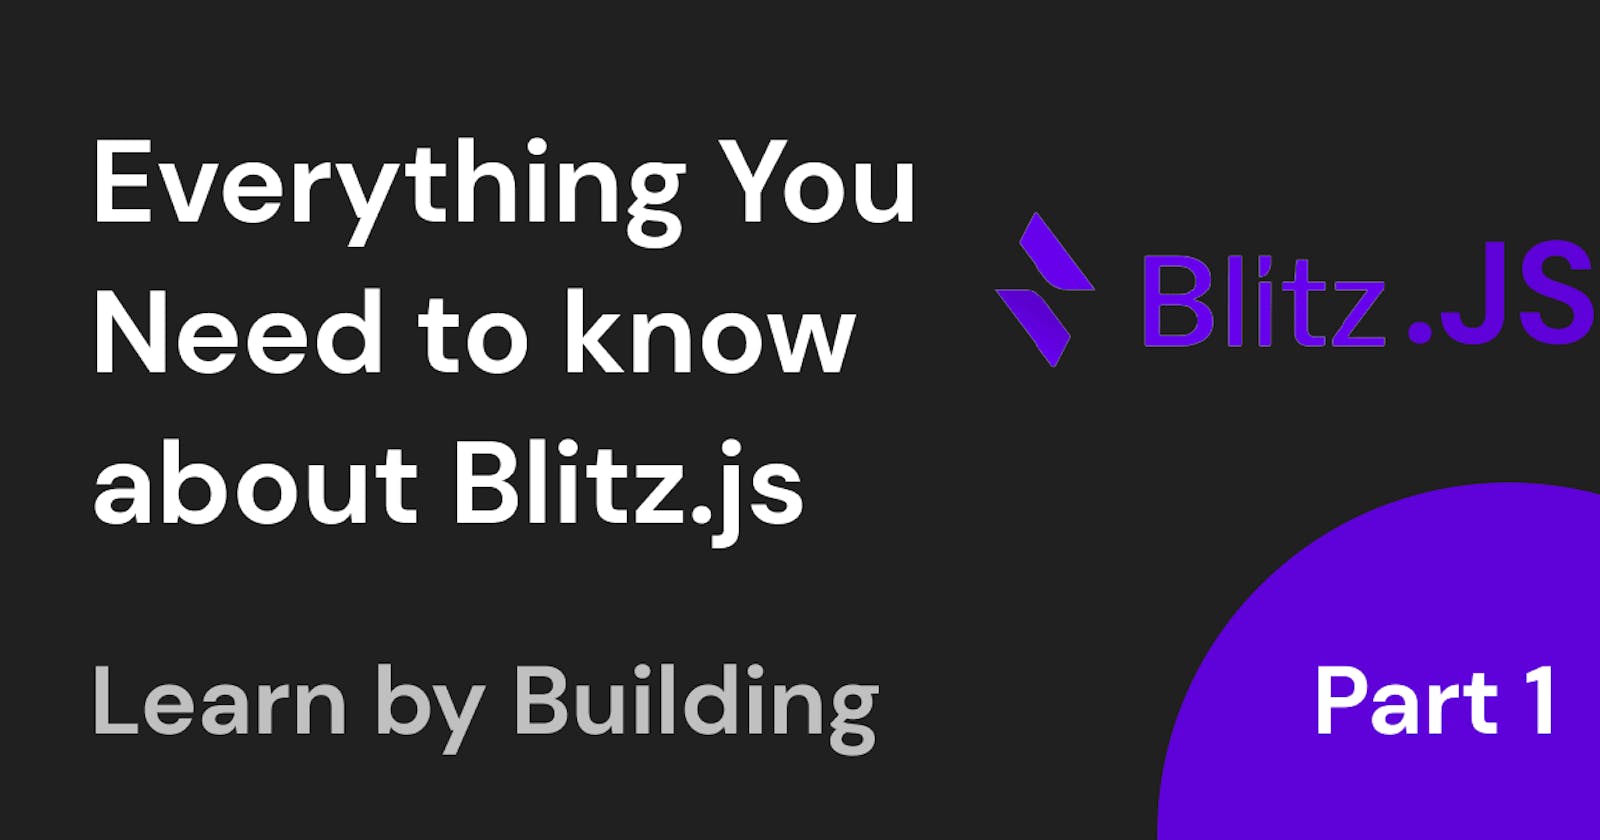 Blitz.js: The Fullstack React Framework